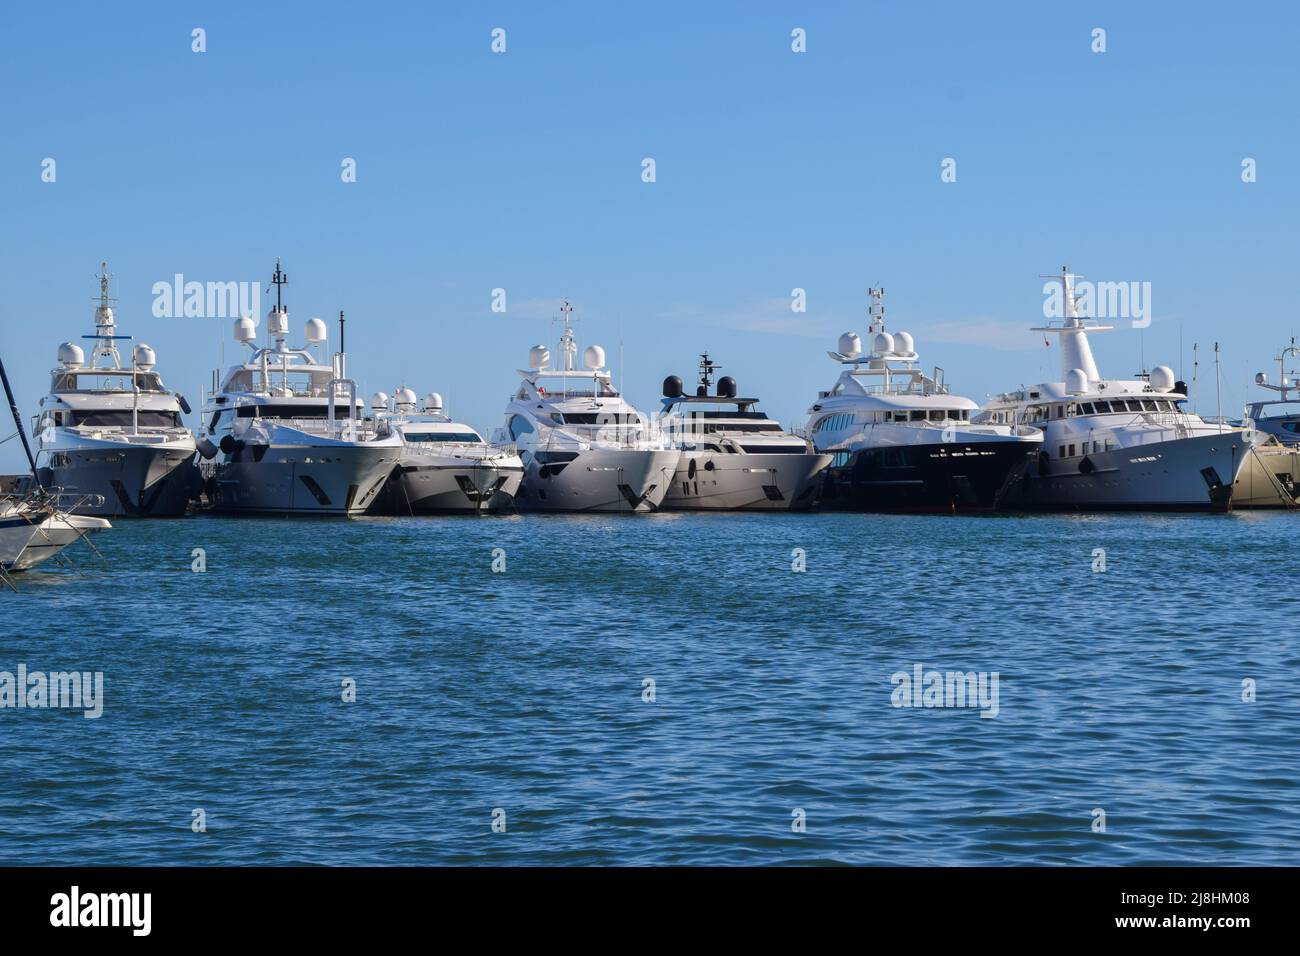 Superyacht Sussurro festgemacht an der Marina in Antibes, Frankreich  Stockfotografie - Alamy